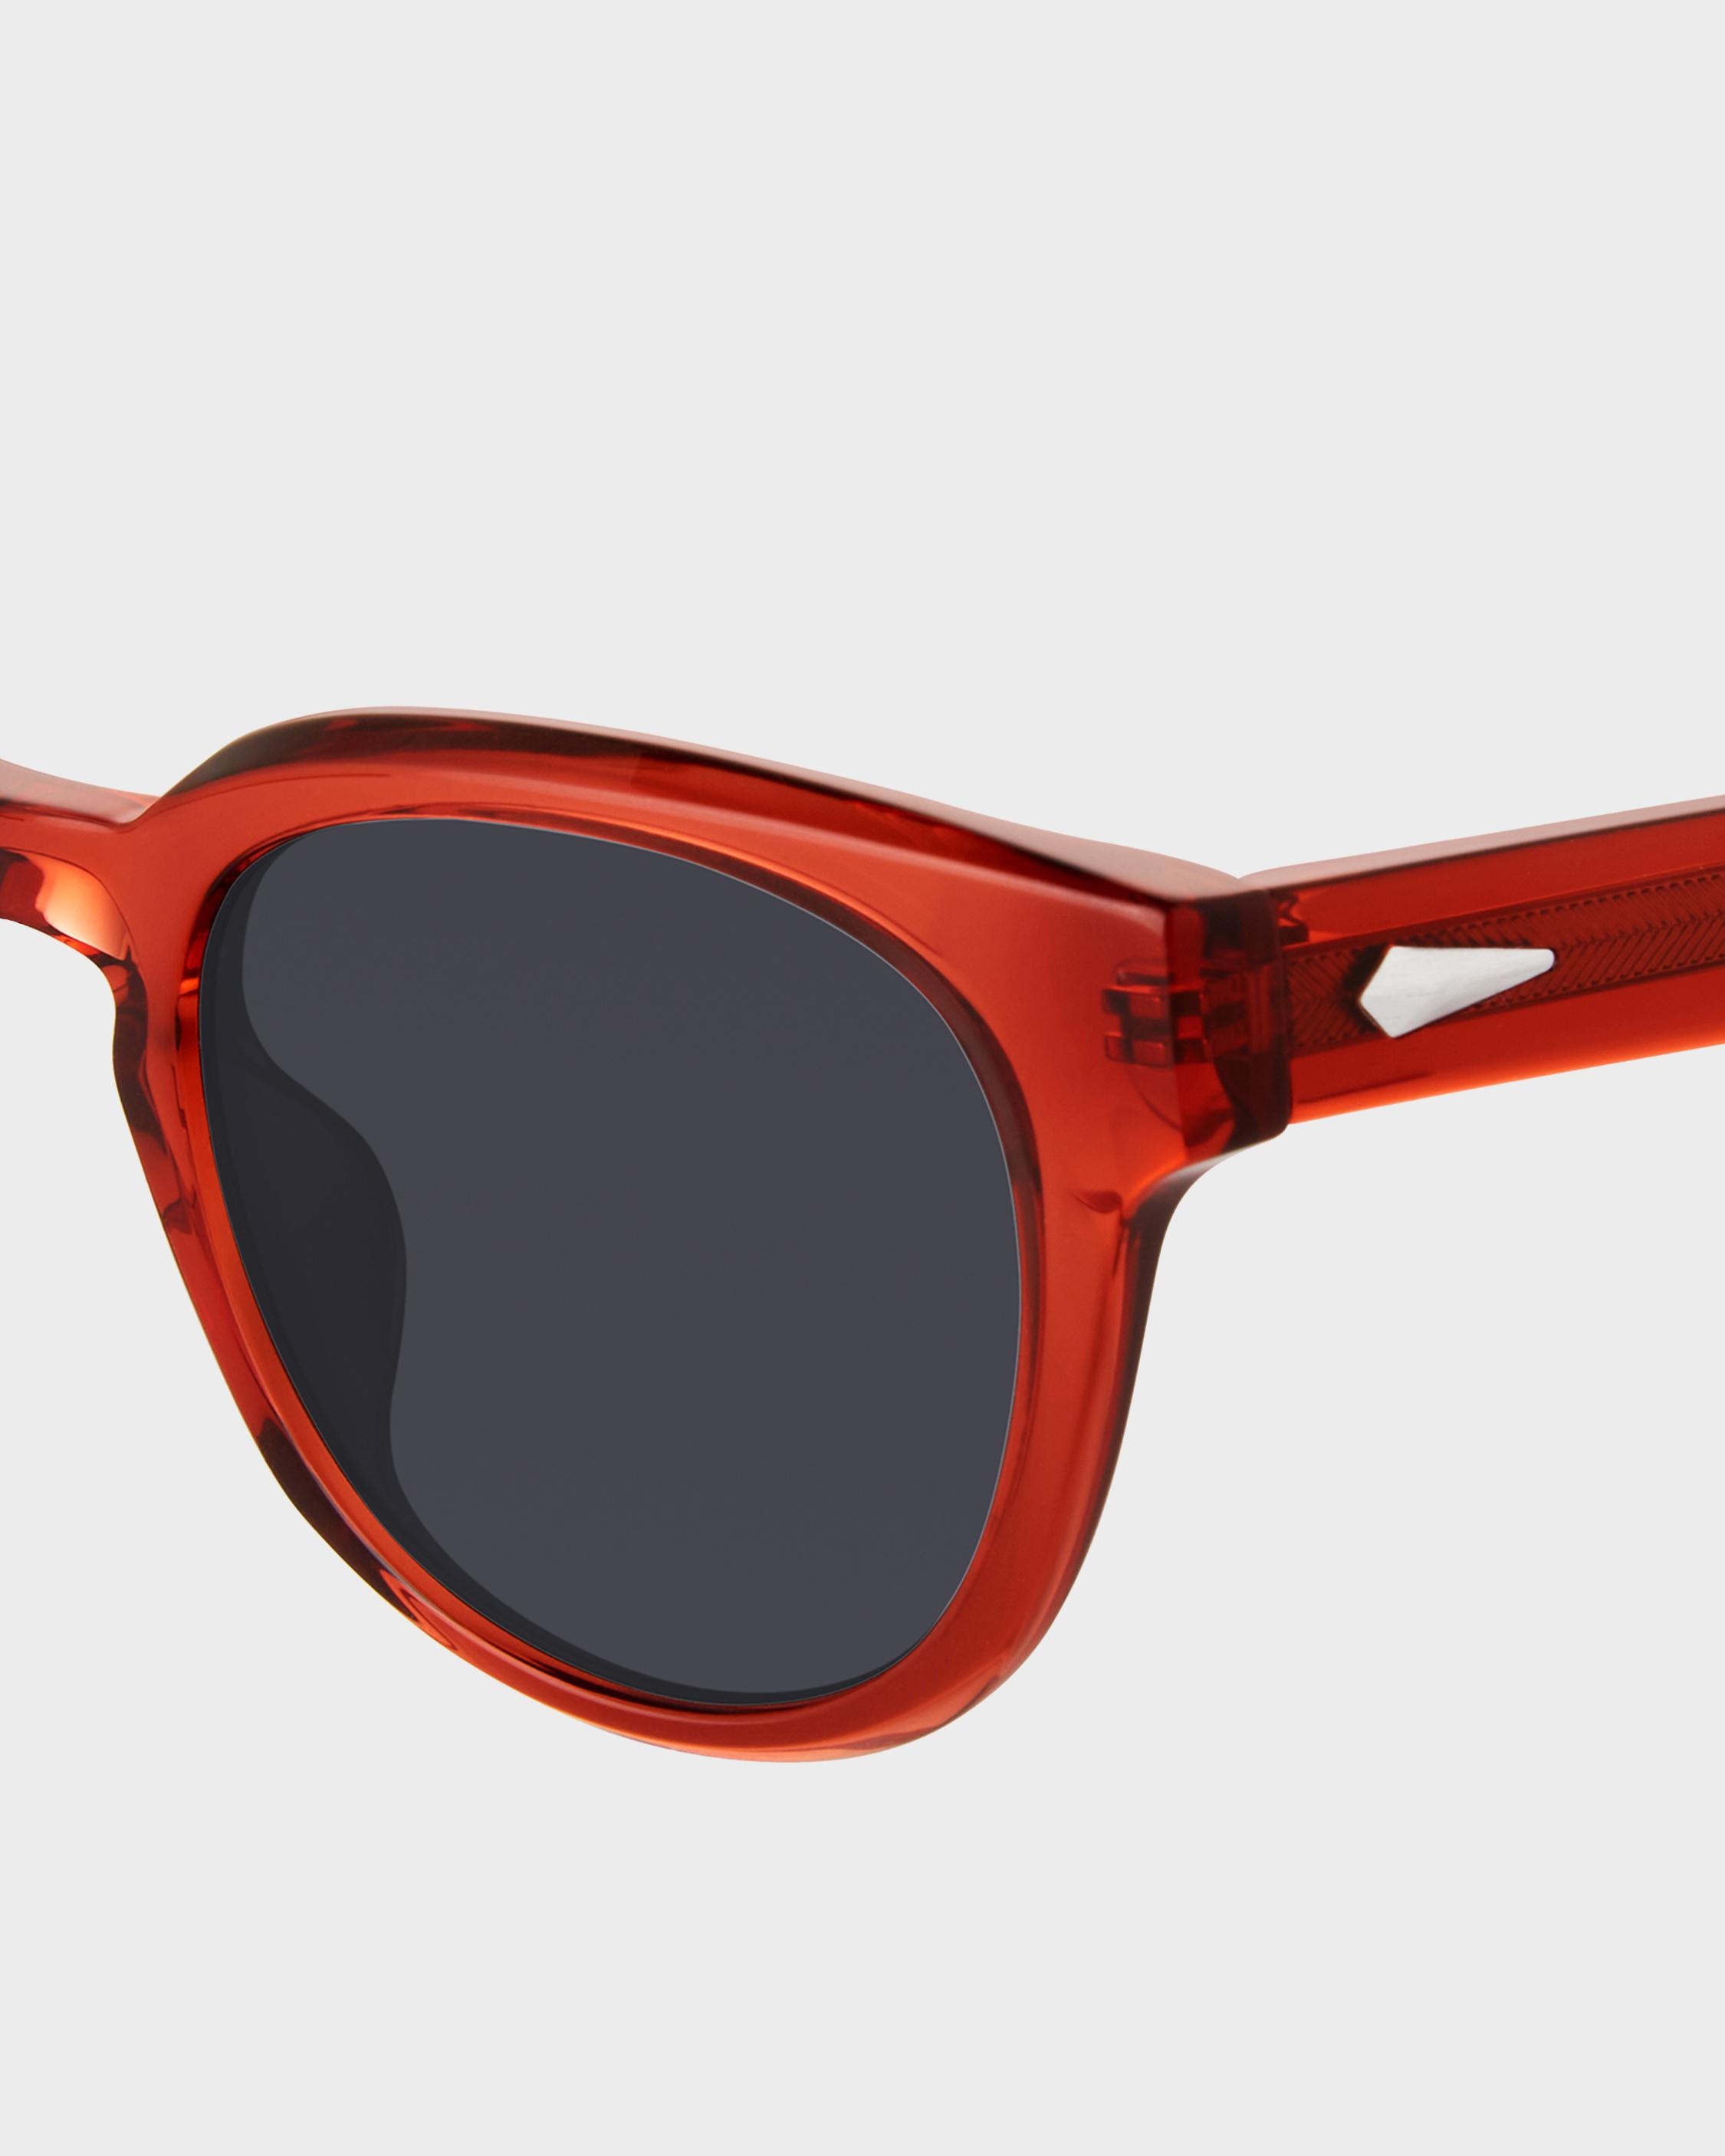 Slayton
Oval Sunglasses - 3